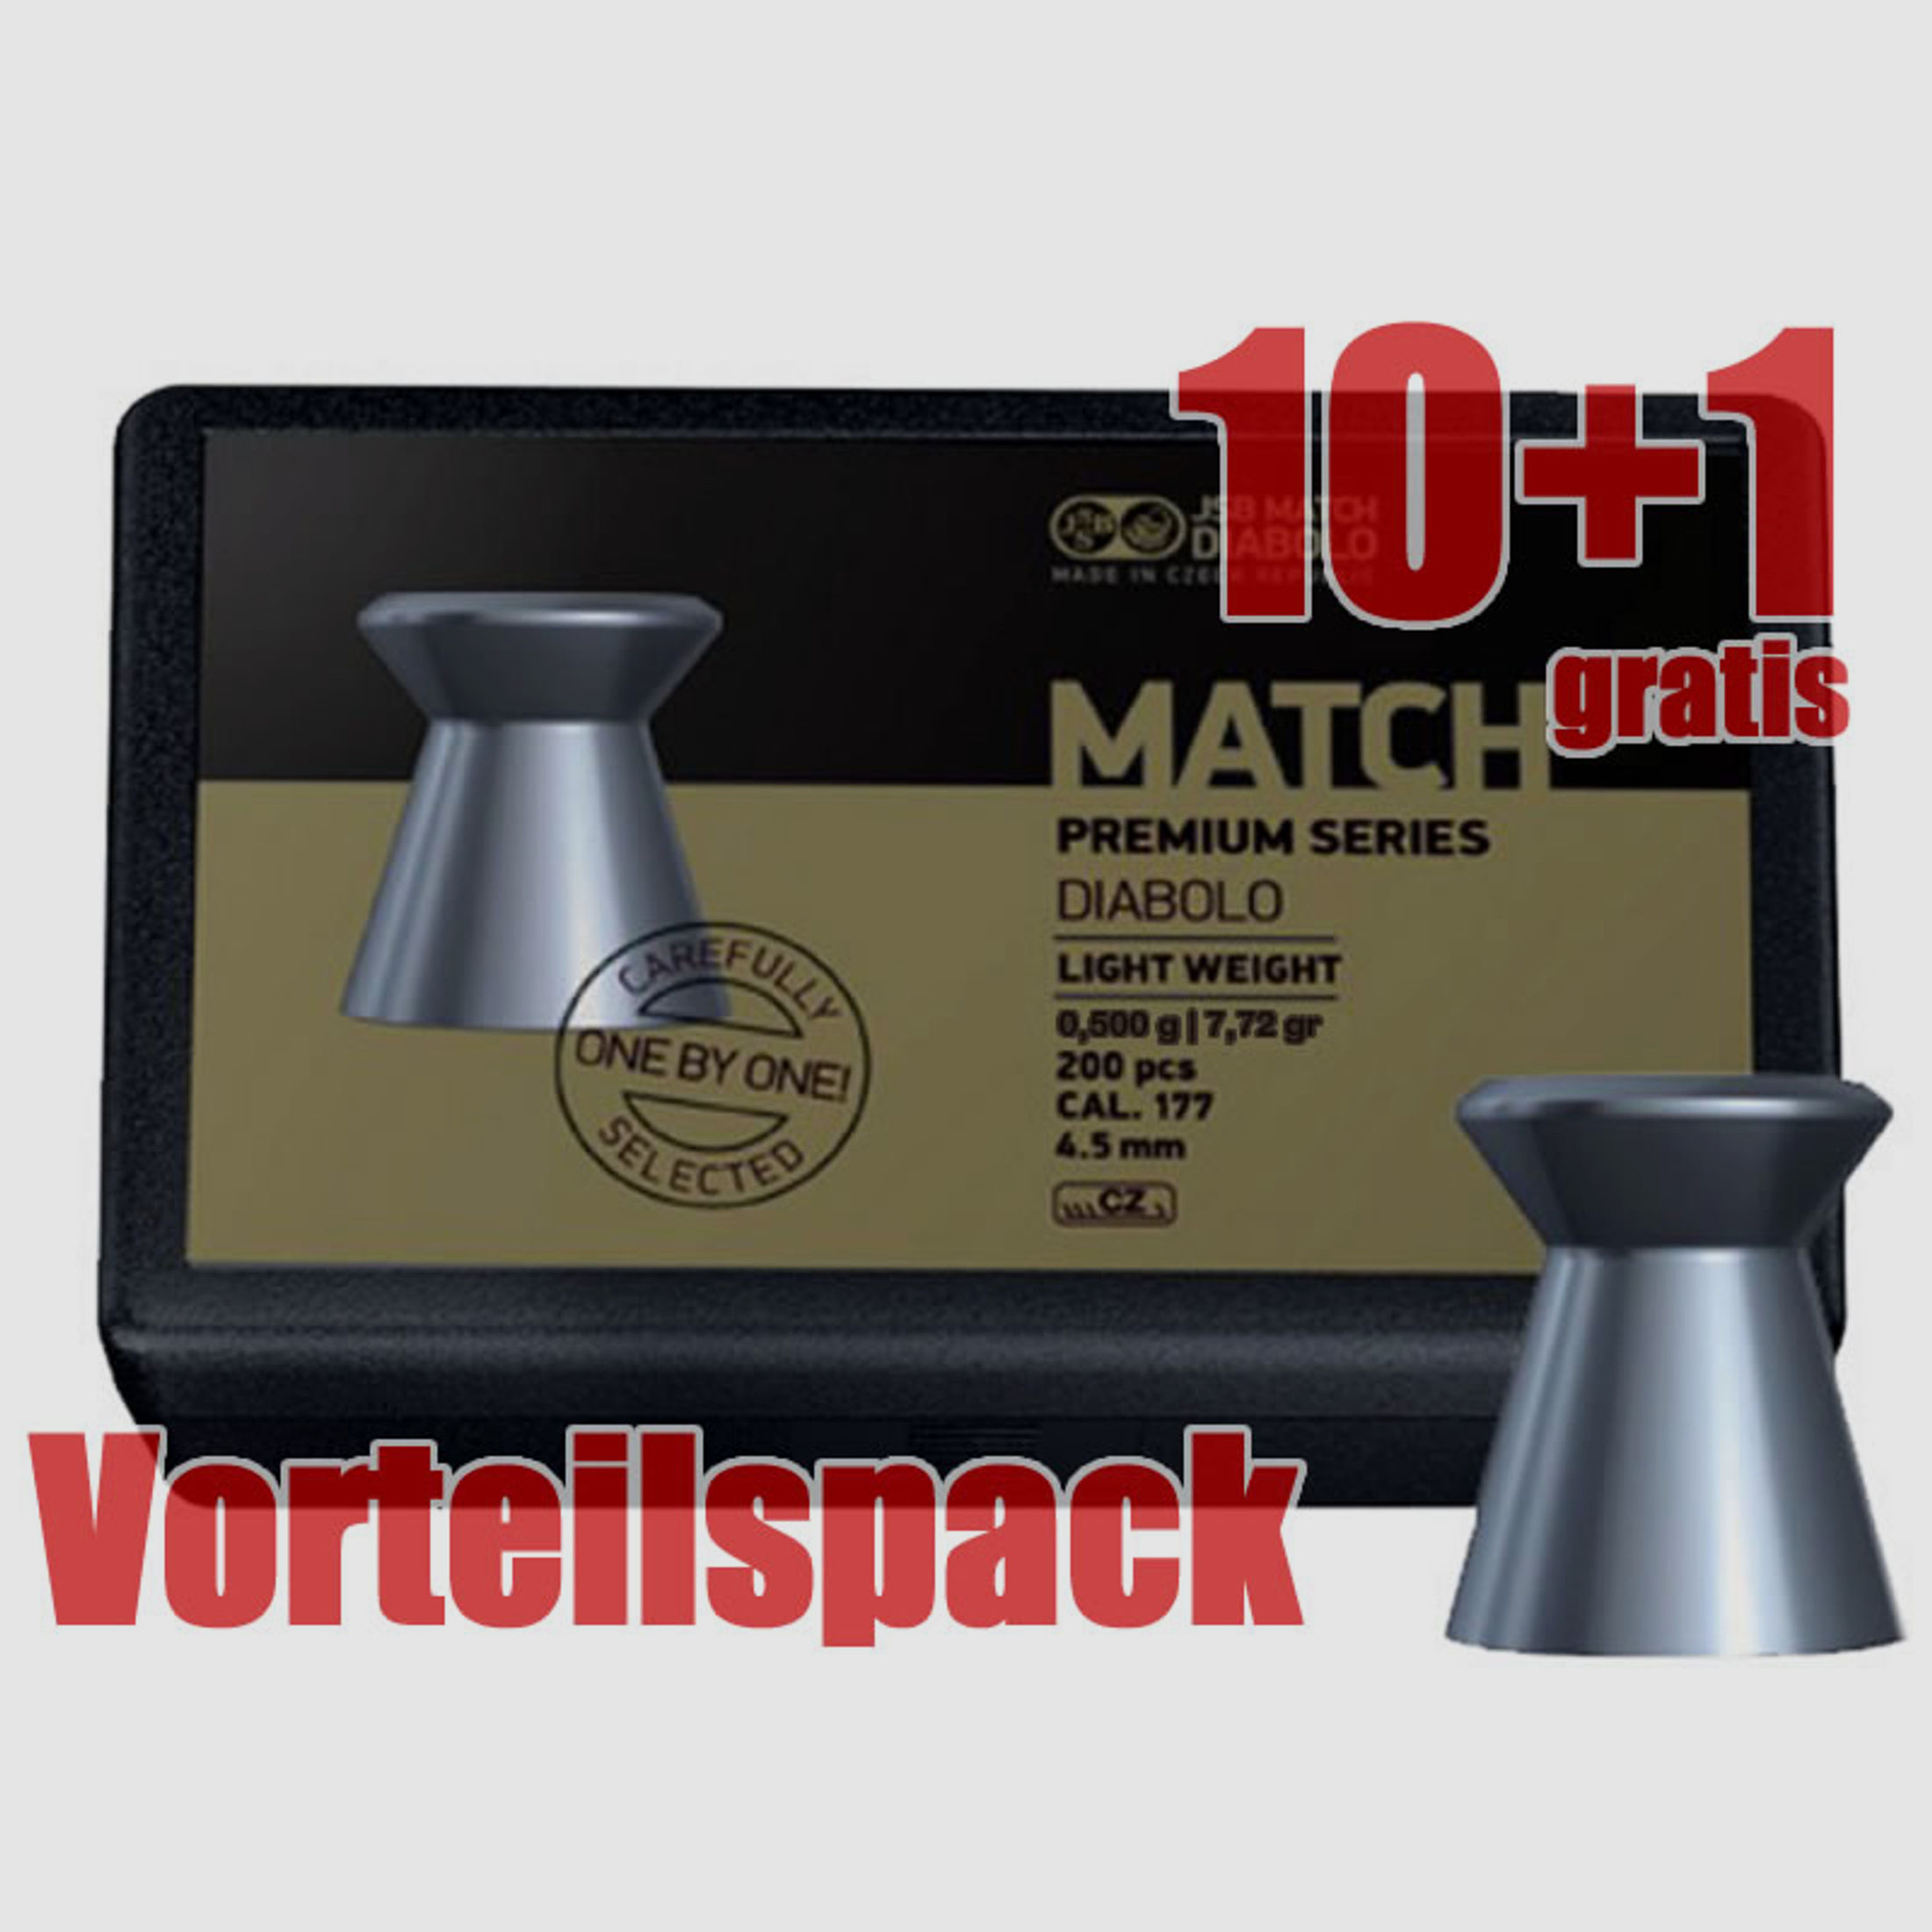 10+1 GRATIS x 200 StĂĽck Flachkopf Diabolo JSB MATCH PREMIUM, Kal. 4,48 mm, 0,500 g